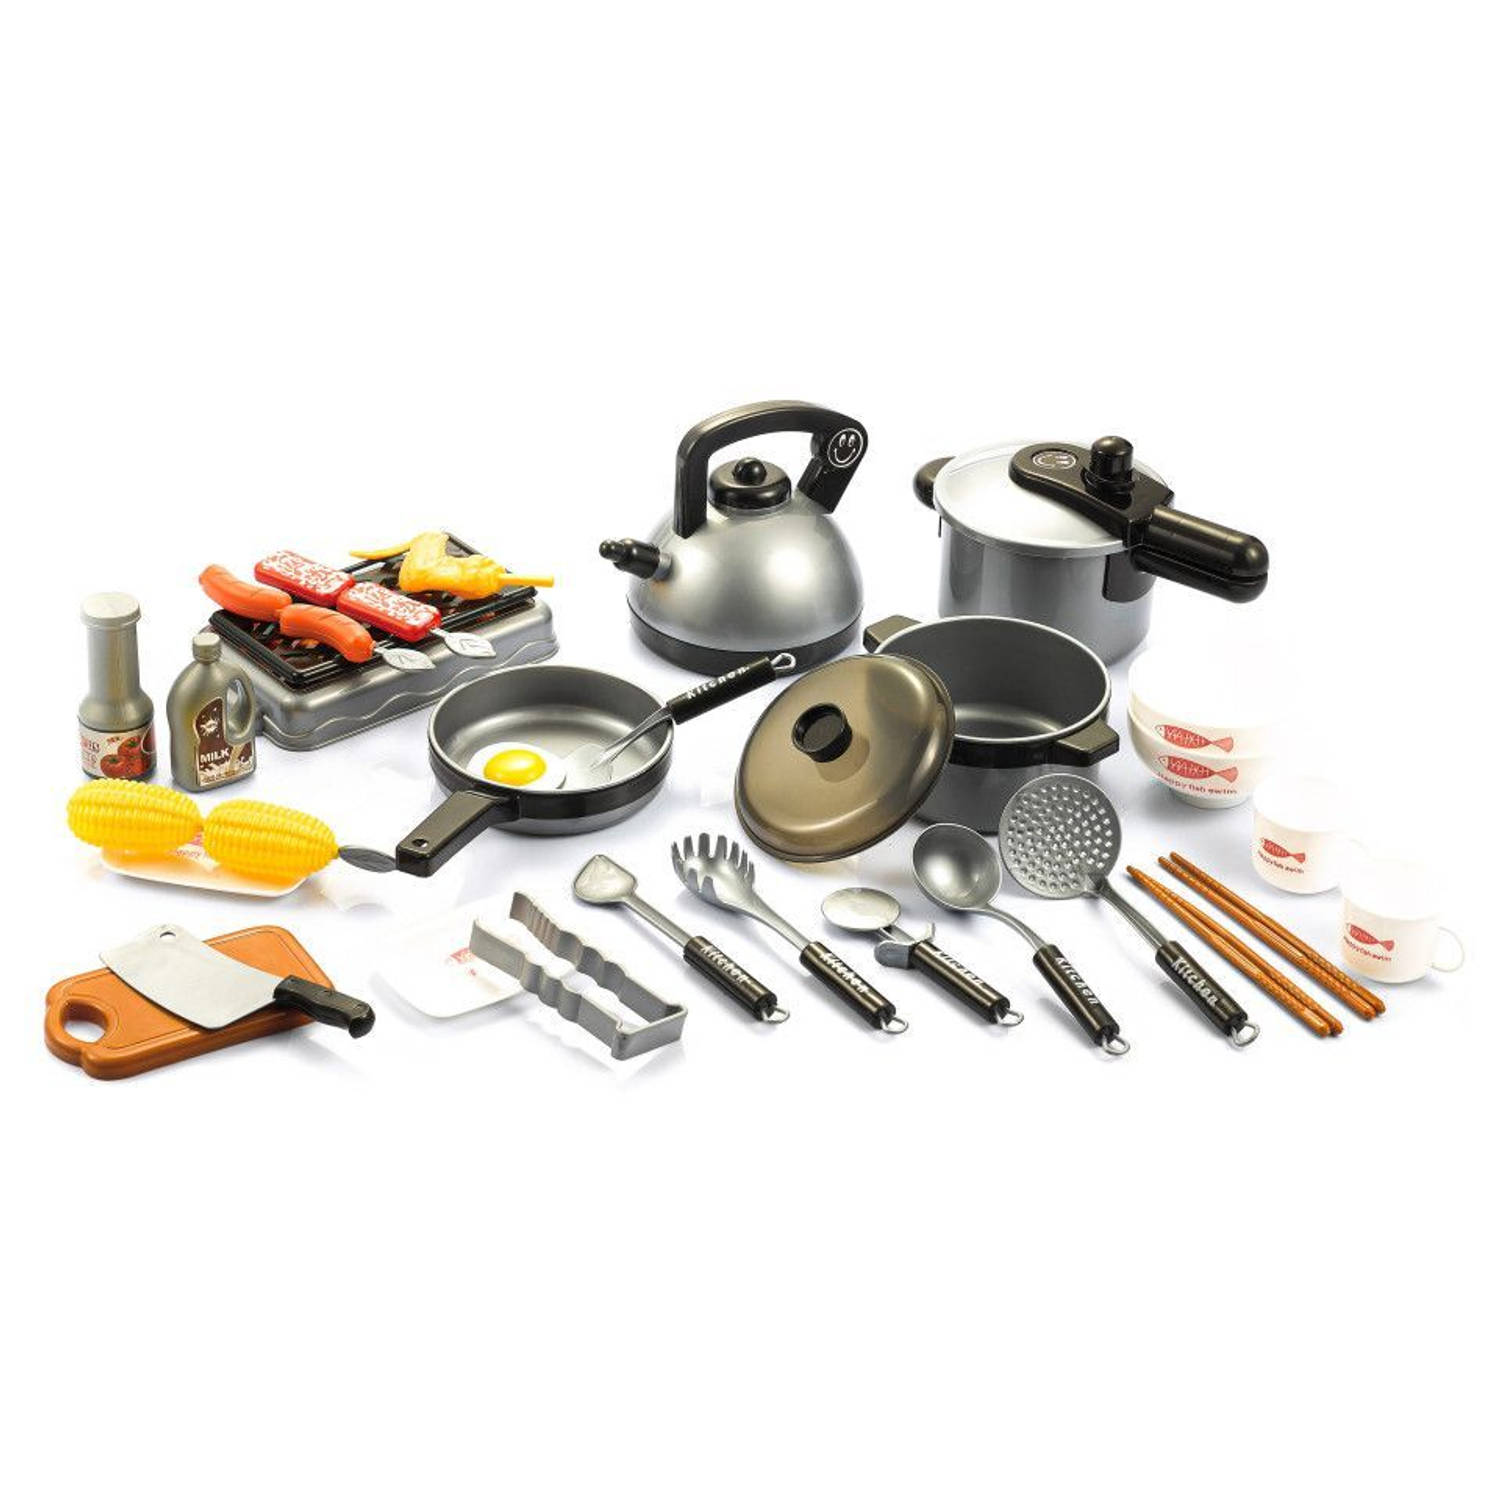 Home kitchen 36 delige speelgoedset voor koken en grillen - Met geluid en licht - Kookset - Speelgoedkeuken accessoires set